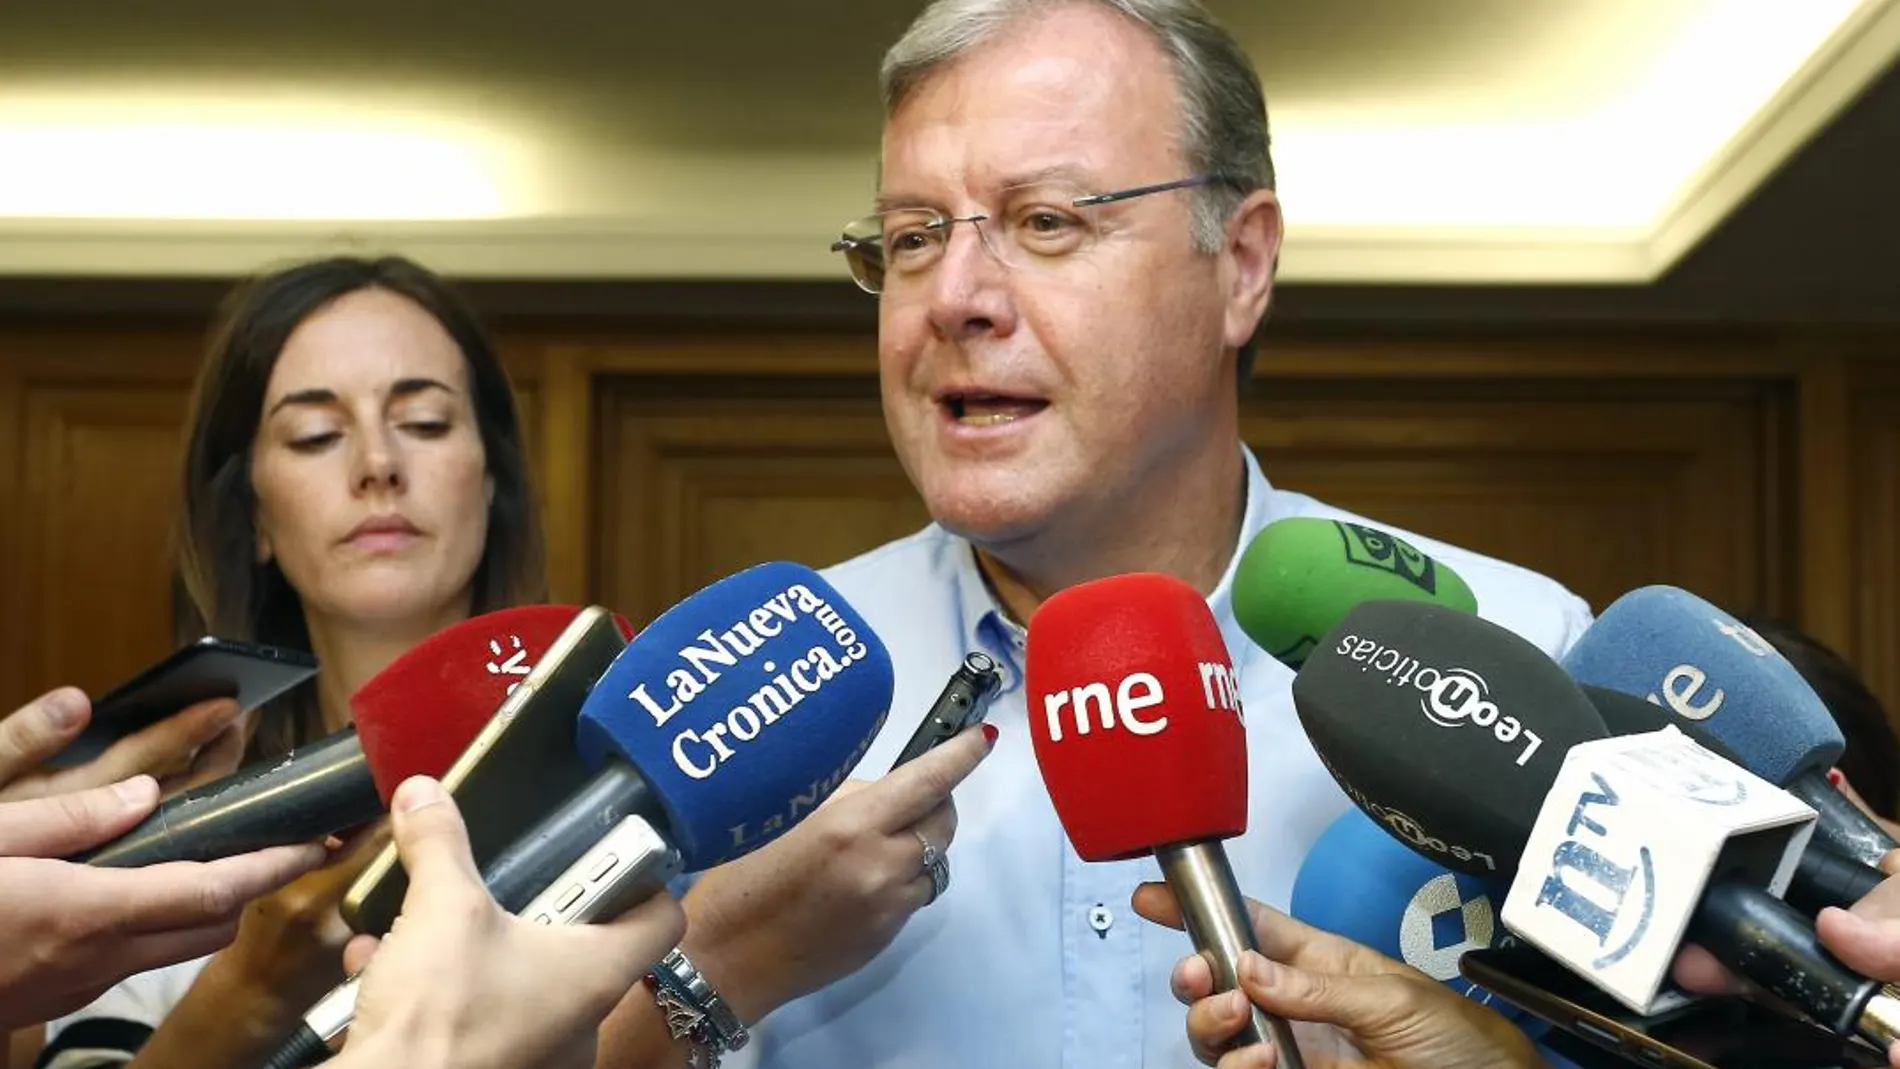 El alcalde de León, Antonio Silván, atiende a los medios de comunicación para dar explicaciones